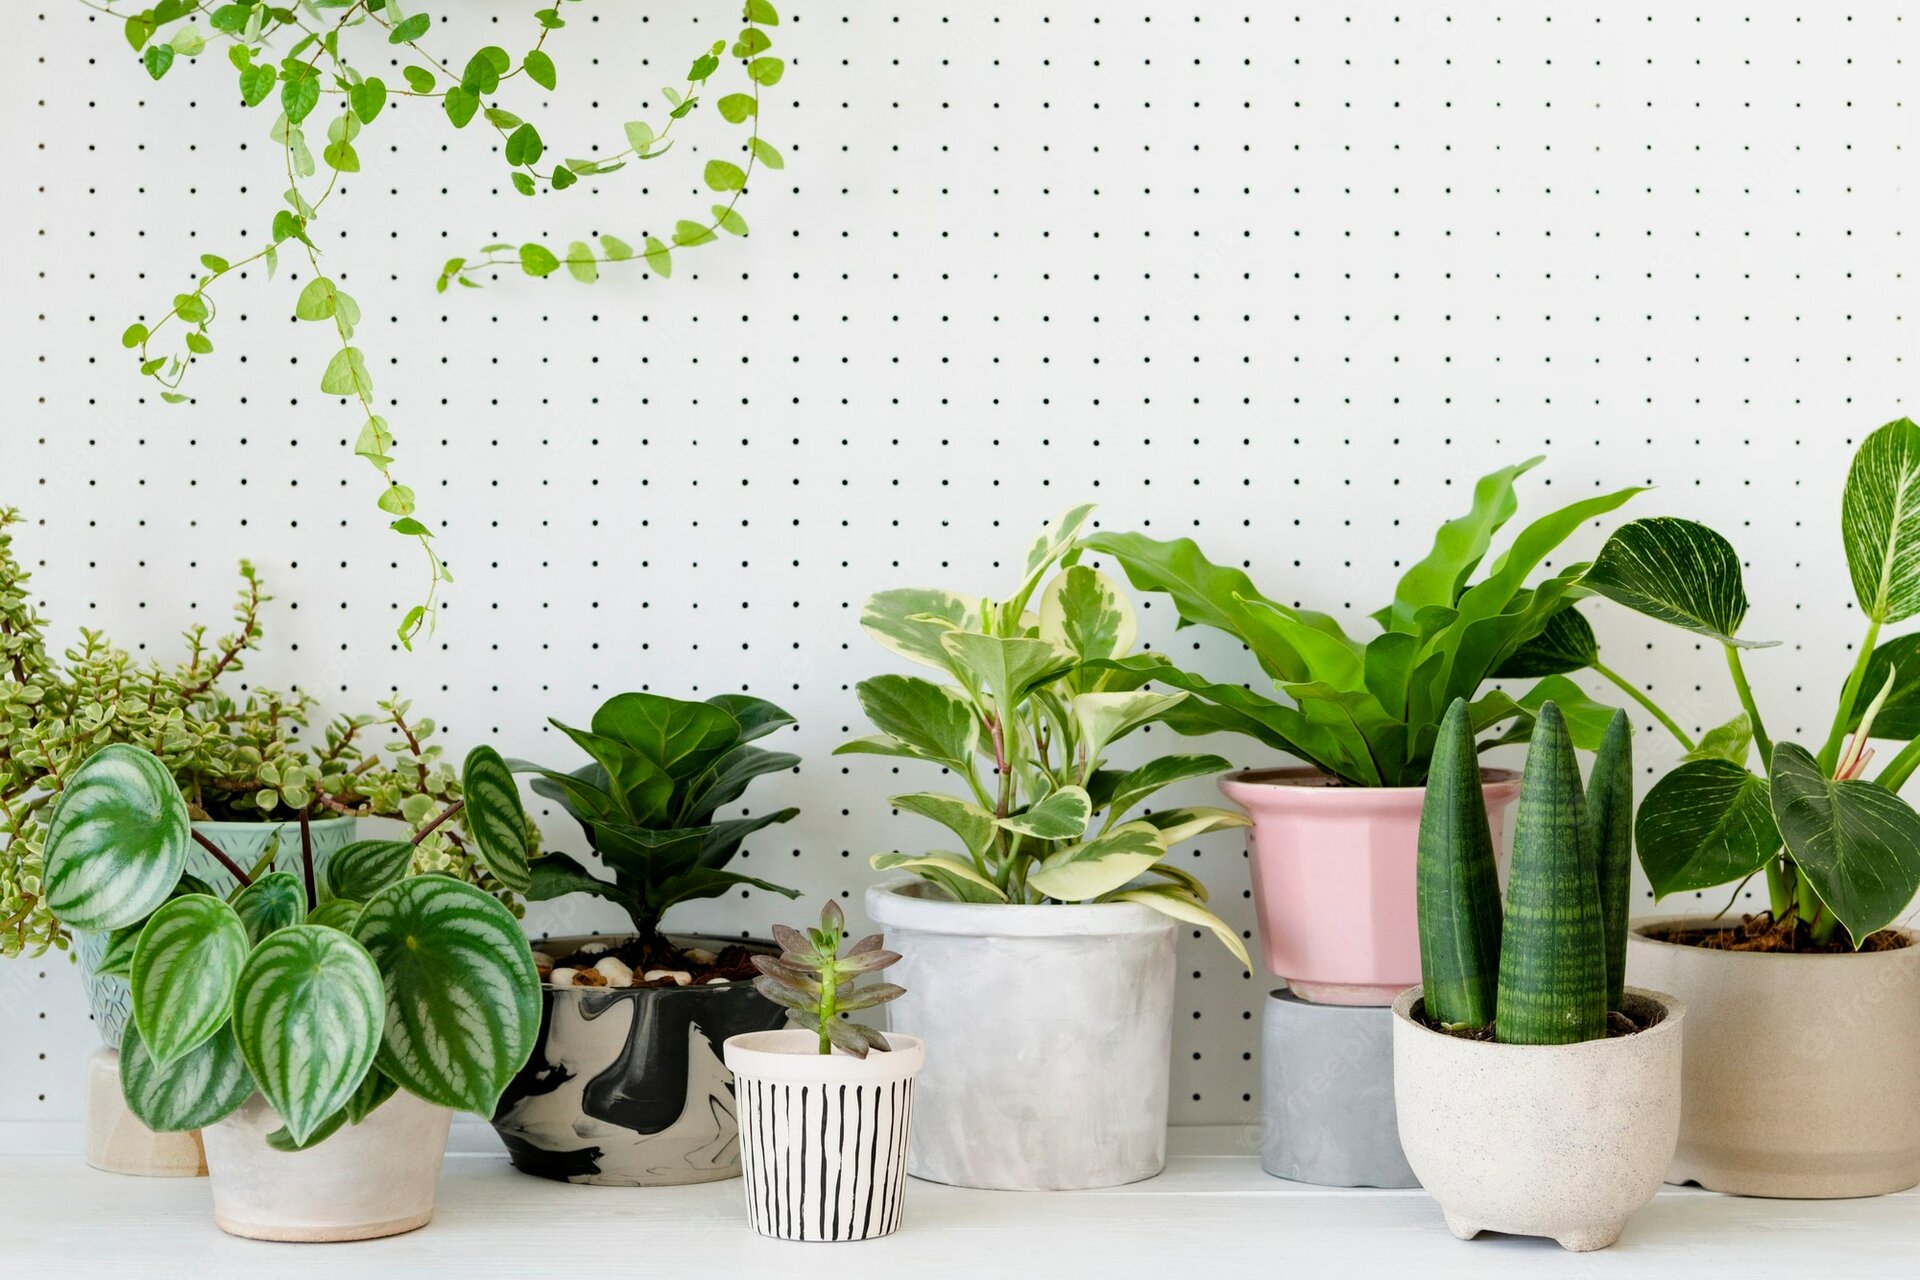 Plantas bonitas de interior para decorar y darle vitalidad a tu hogar